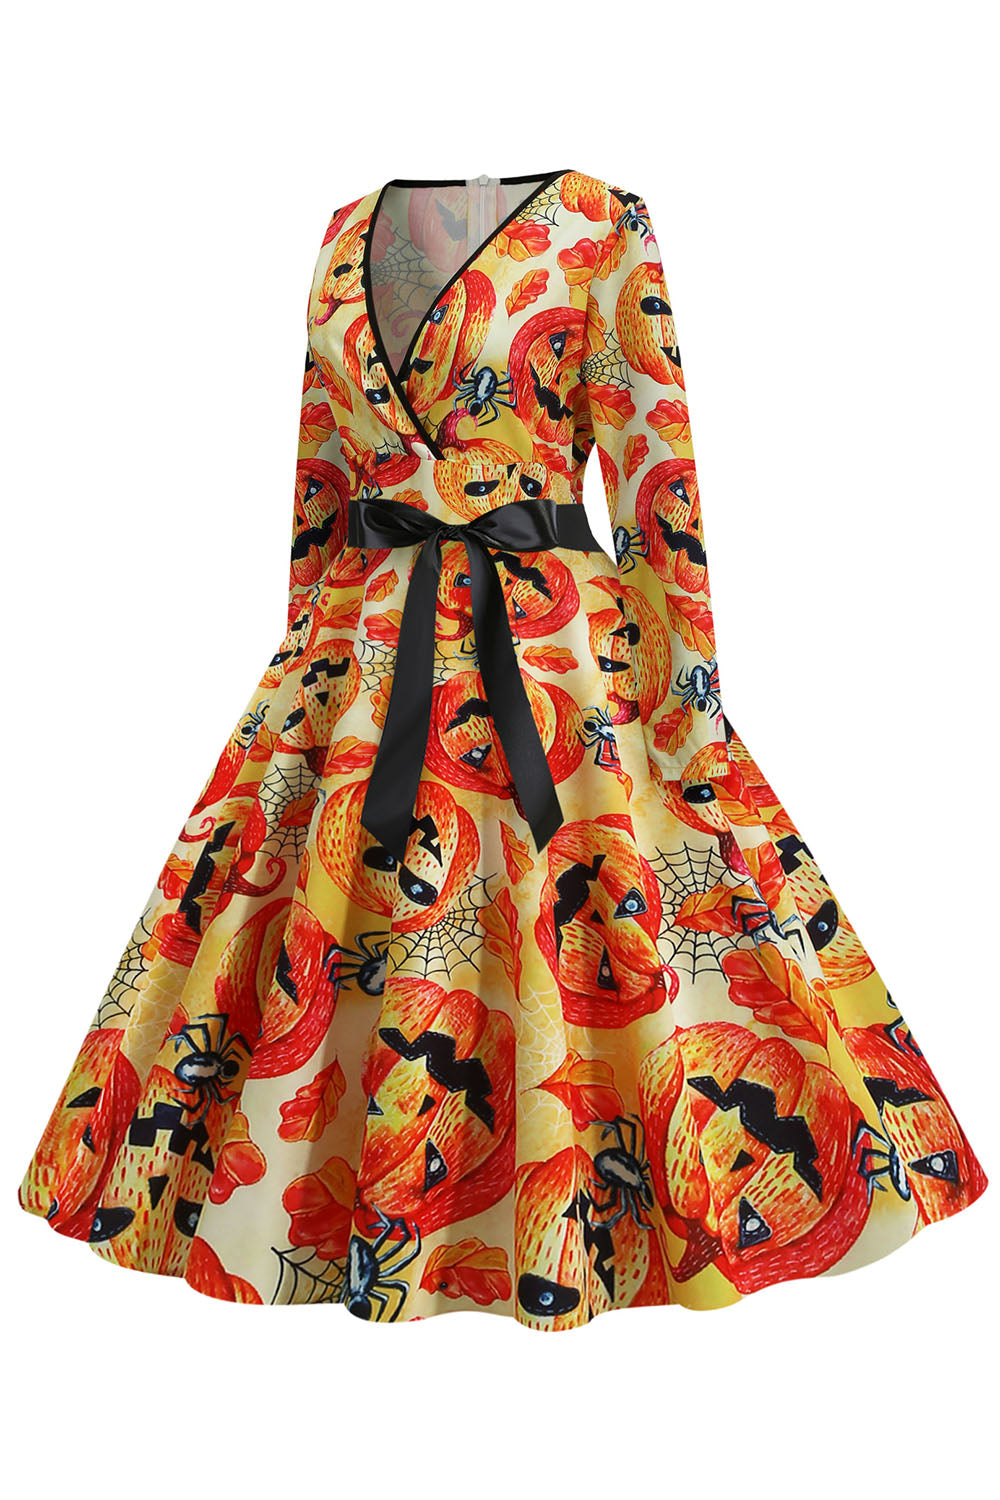 Orange Latern Printed Halloween Vintage 1950s Dress with Sleeves